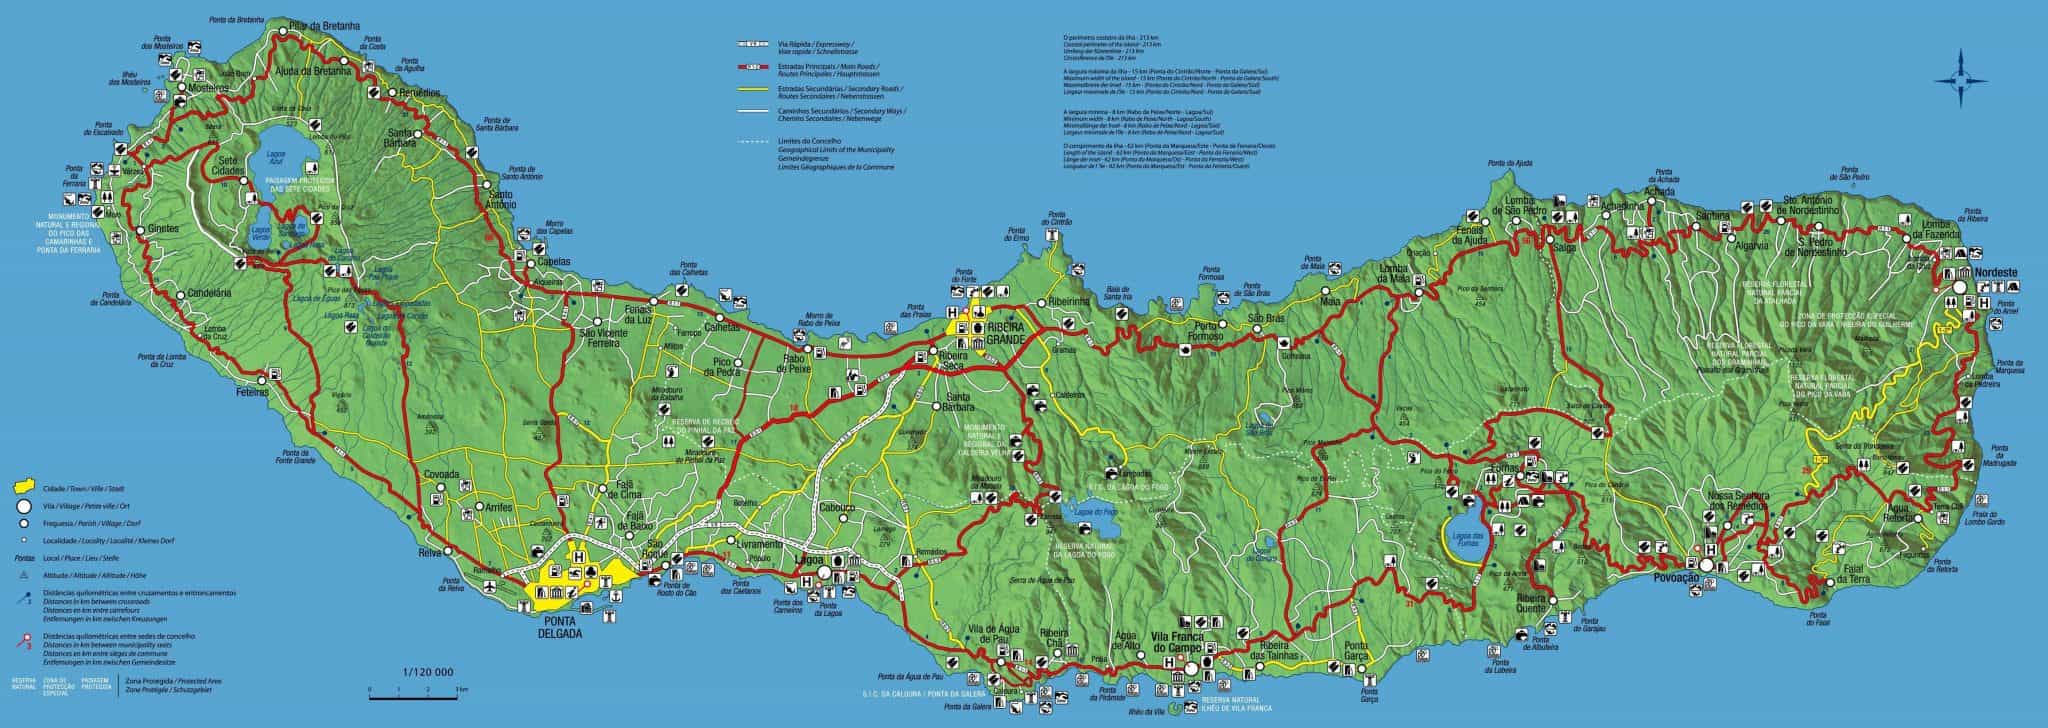 Mapa da ilha de S. Miguel, Açores